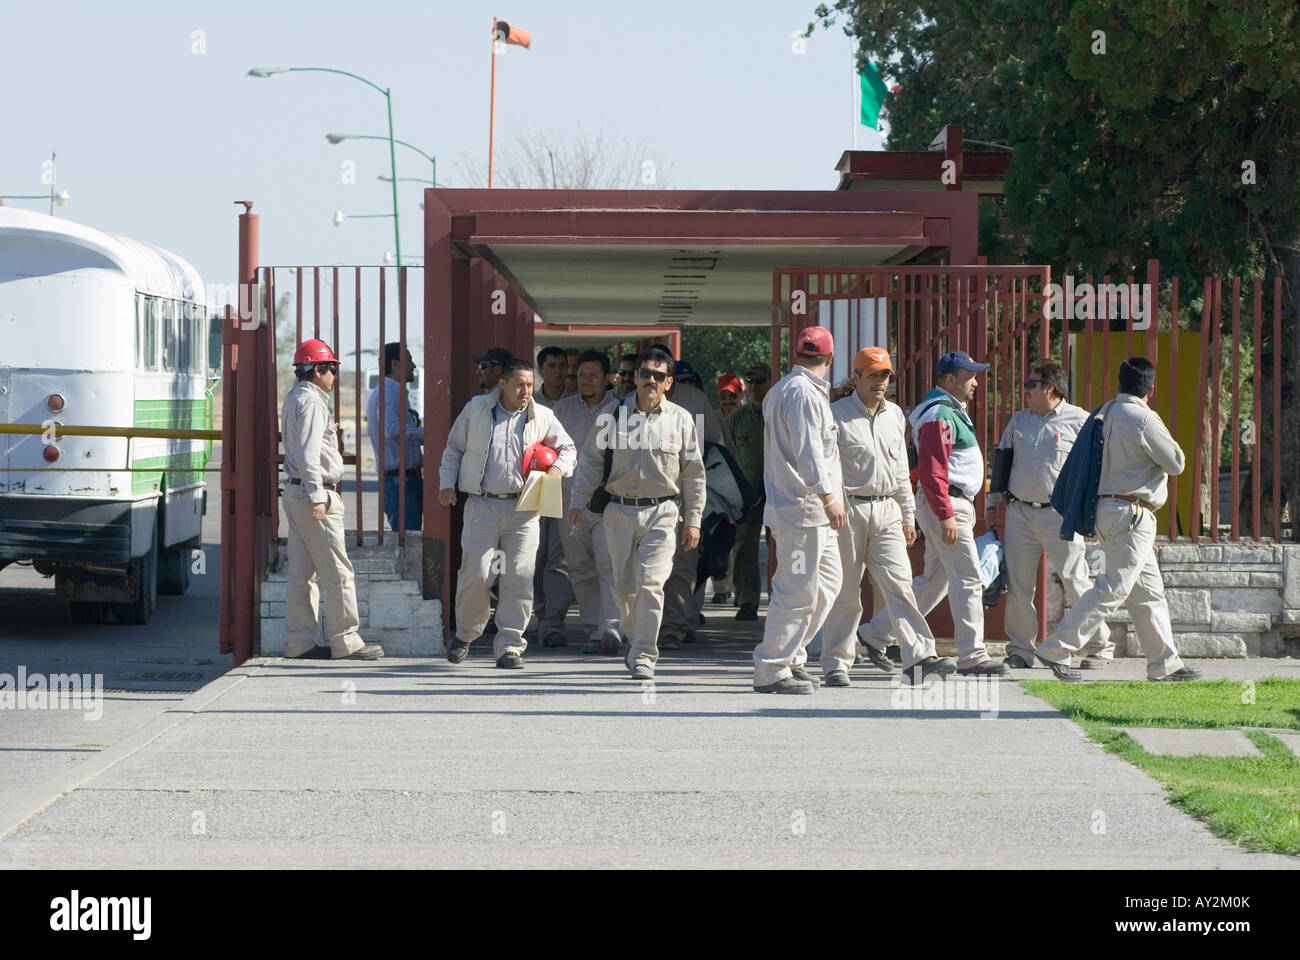 Les travailleurs quittent l'usine à la fin de leur quart de travail à l'usine pétrochimique de Pemex Petróleos Mexicanos en Camargo Chihuahua Banque D'Images